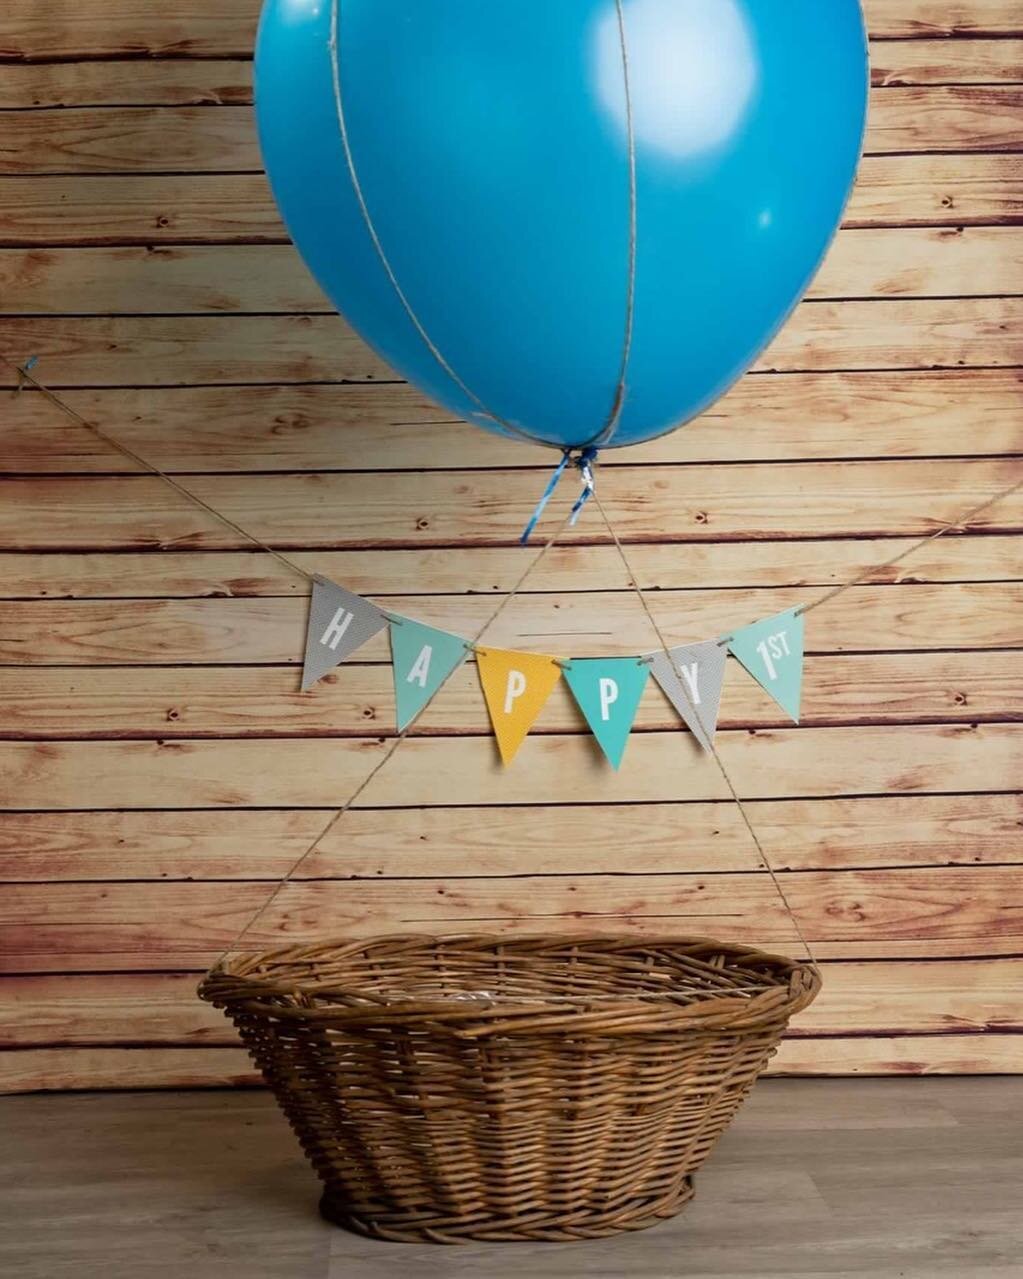 #first birthday photo shoot!!
#hotairballoon #oneyearold #firstyearphotos #studio #photography #one #blue